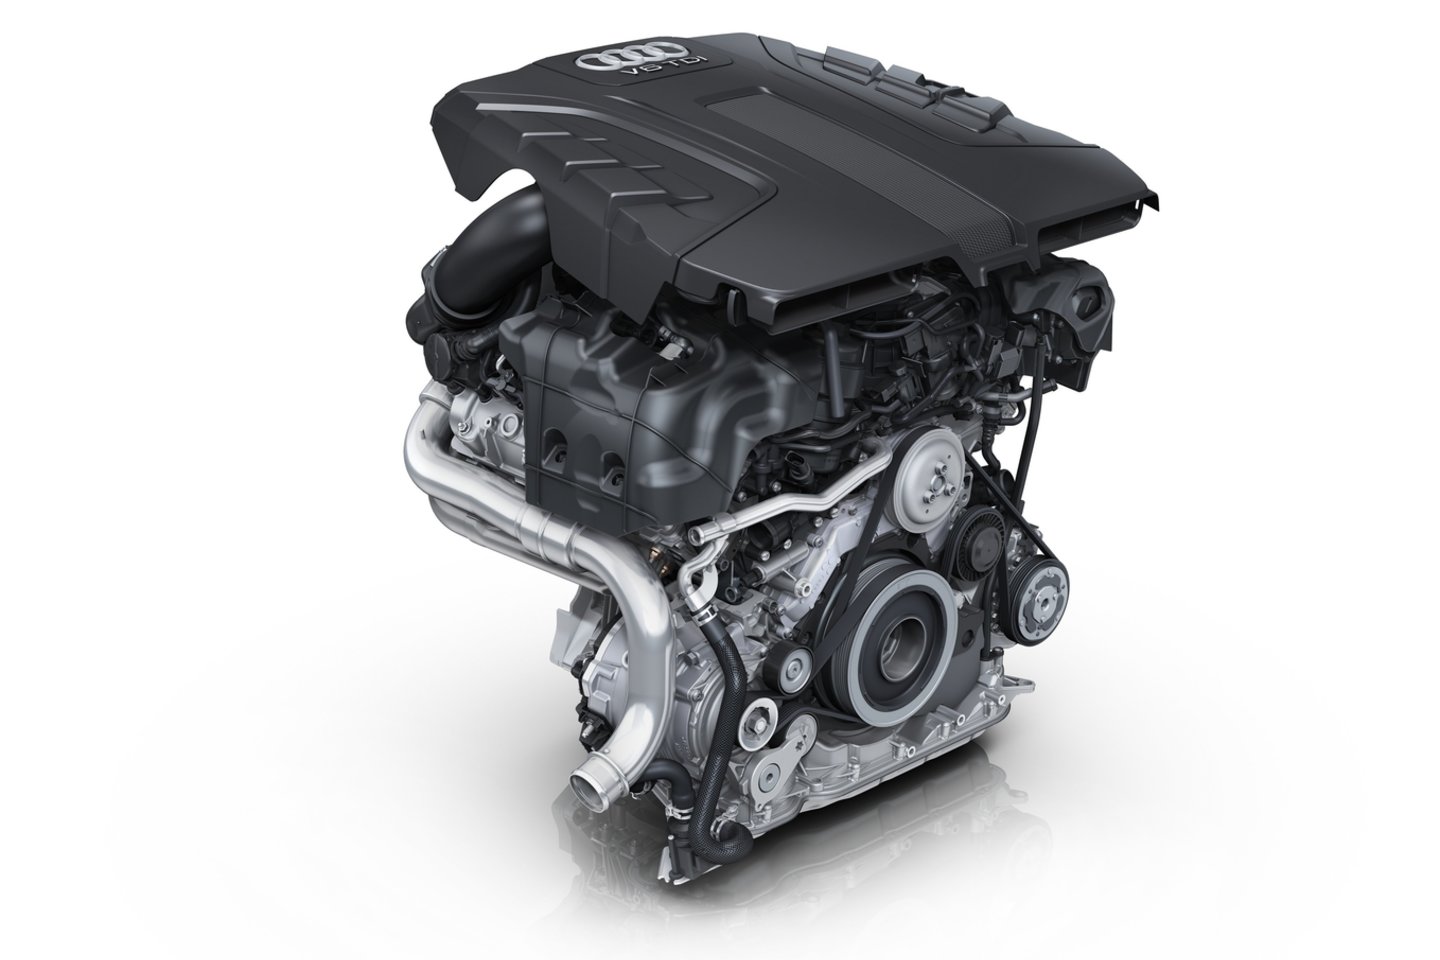  3 litrų darbinio tūrio V6 tipo dyzelinio variklio maksimali išvystoma galia siekia 286 AG, o didžiausias sukimo momentas – 600 Nm.<br> Gamintojo nuotr.